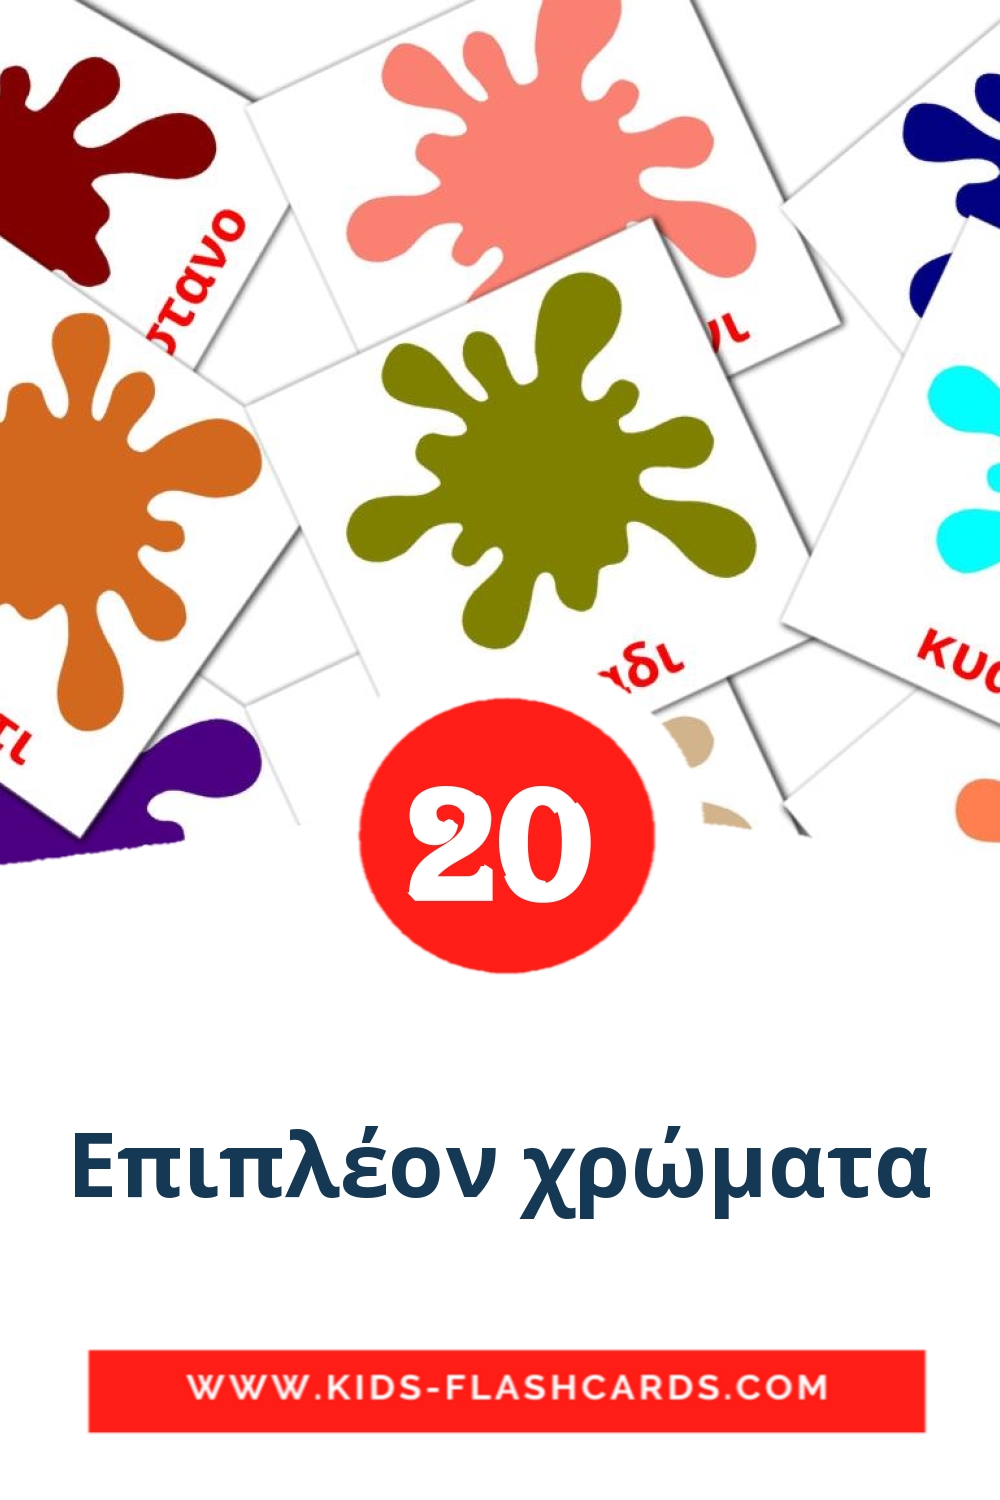 20 Cartões com Imagens de Επιπλέον χρώματα para Jardim de Infância em grego